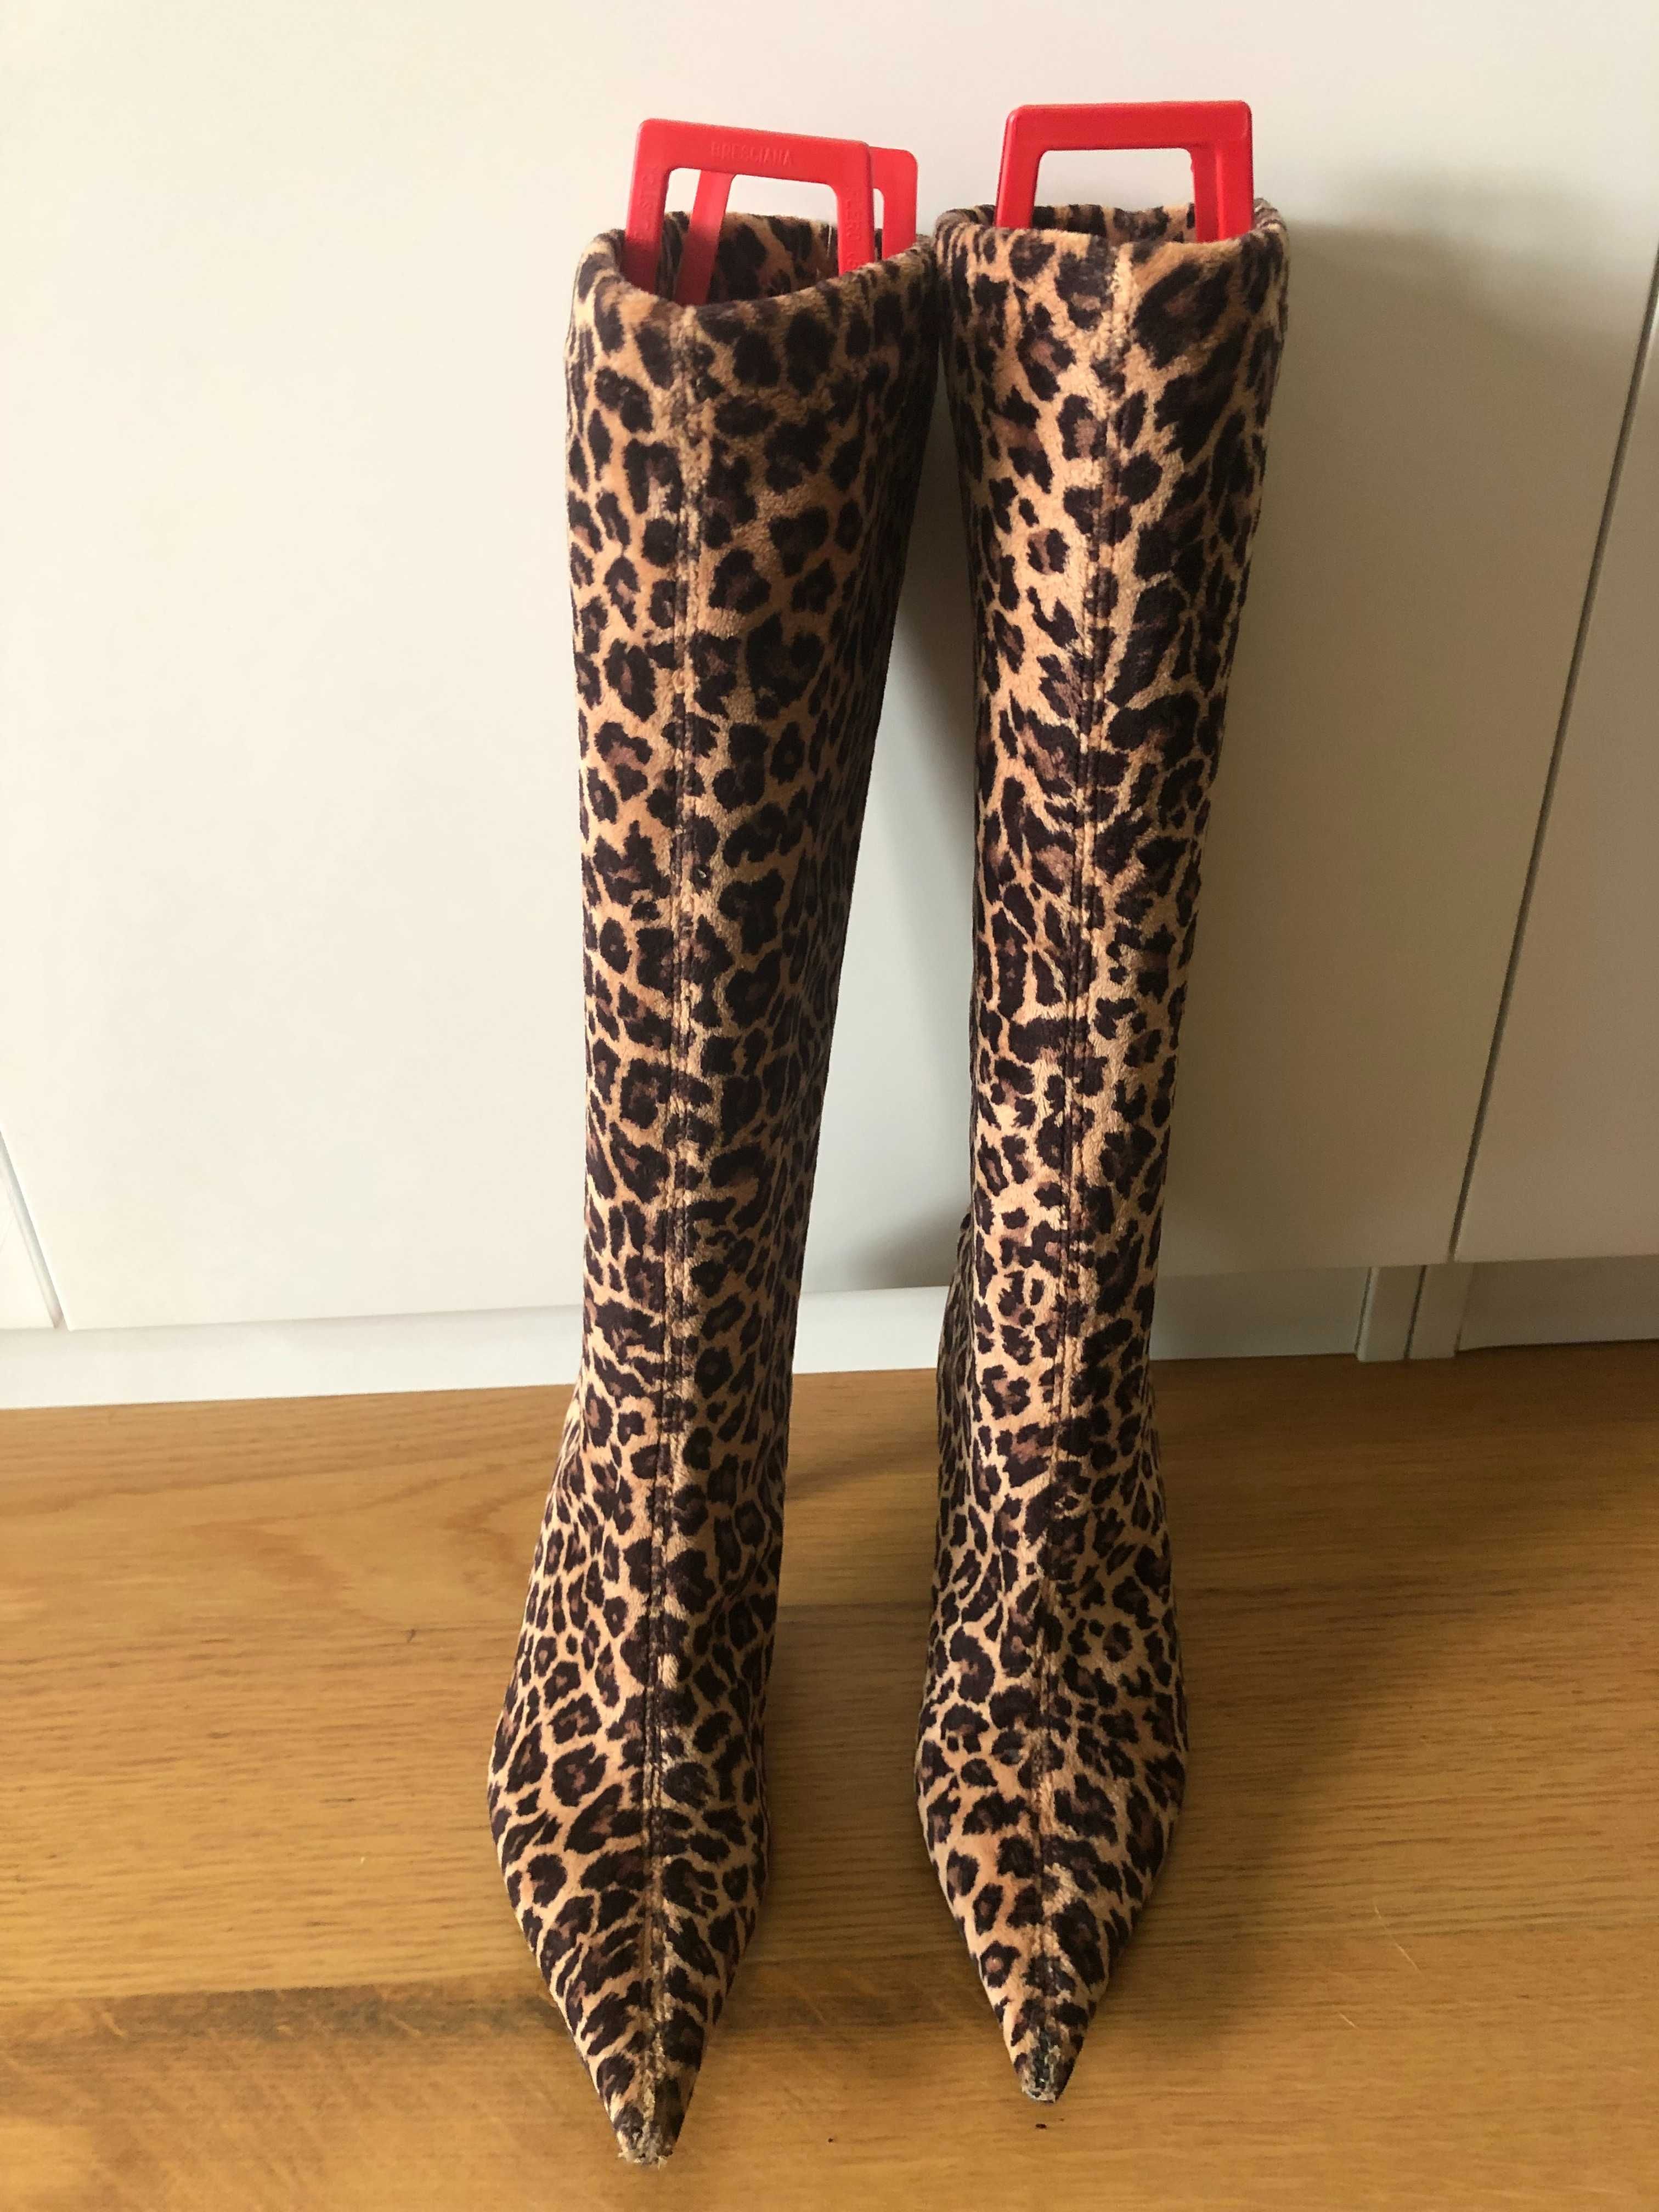 Botas de cano alto, leopardo - tamanho 36